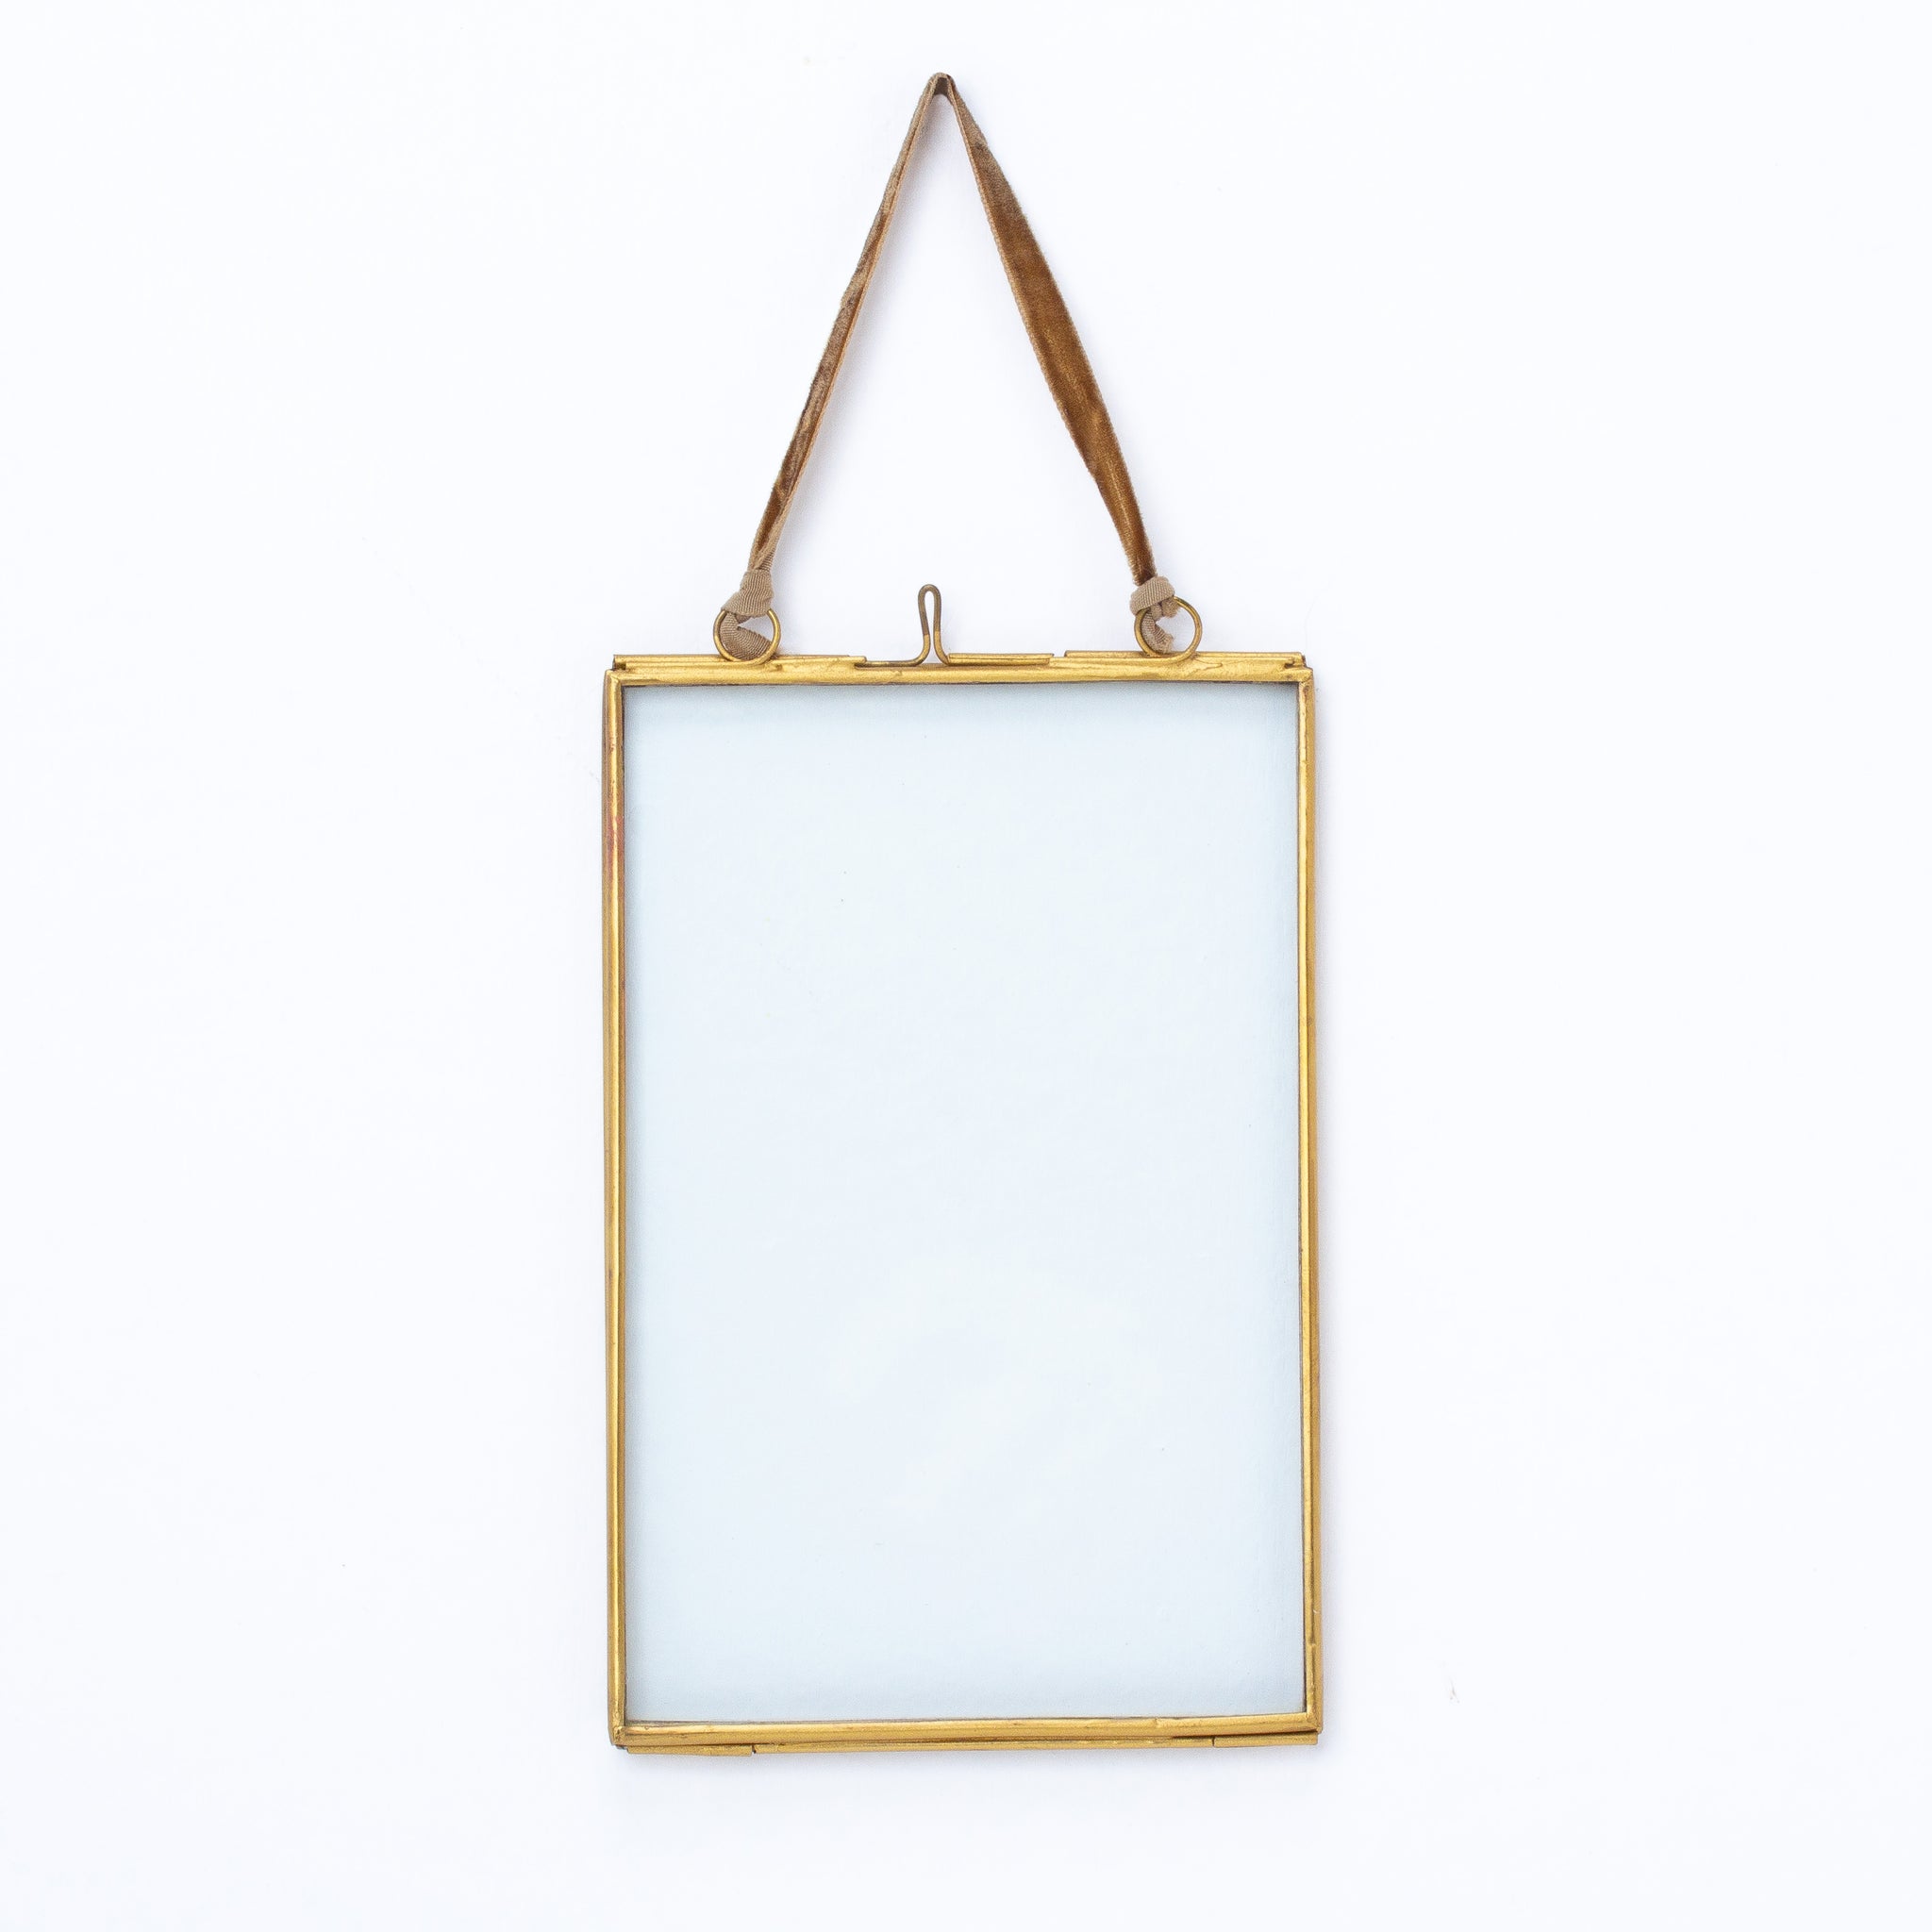 Brass Hanging Frame - 15 x 10cm